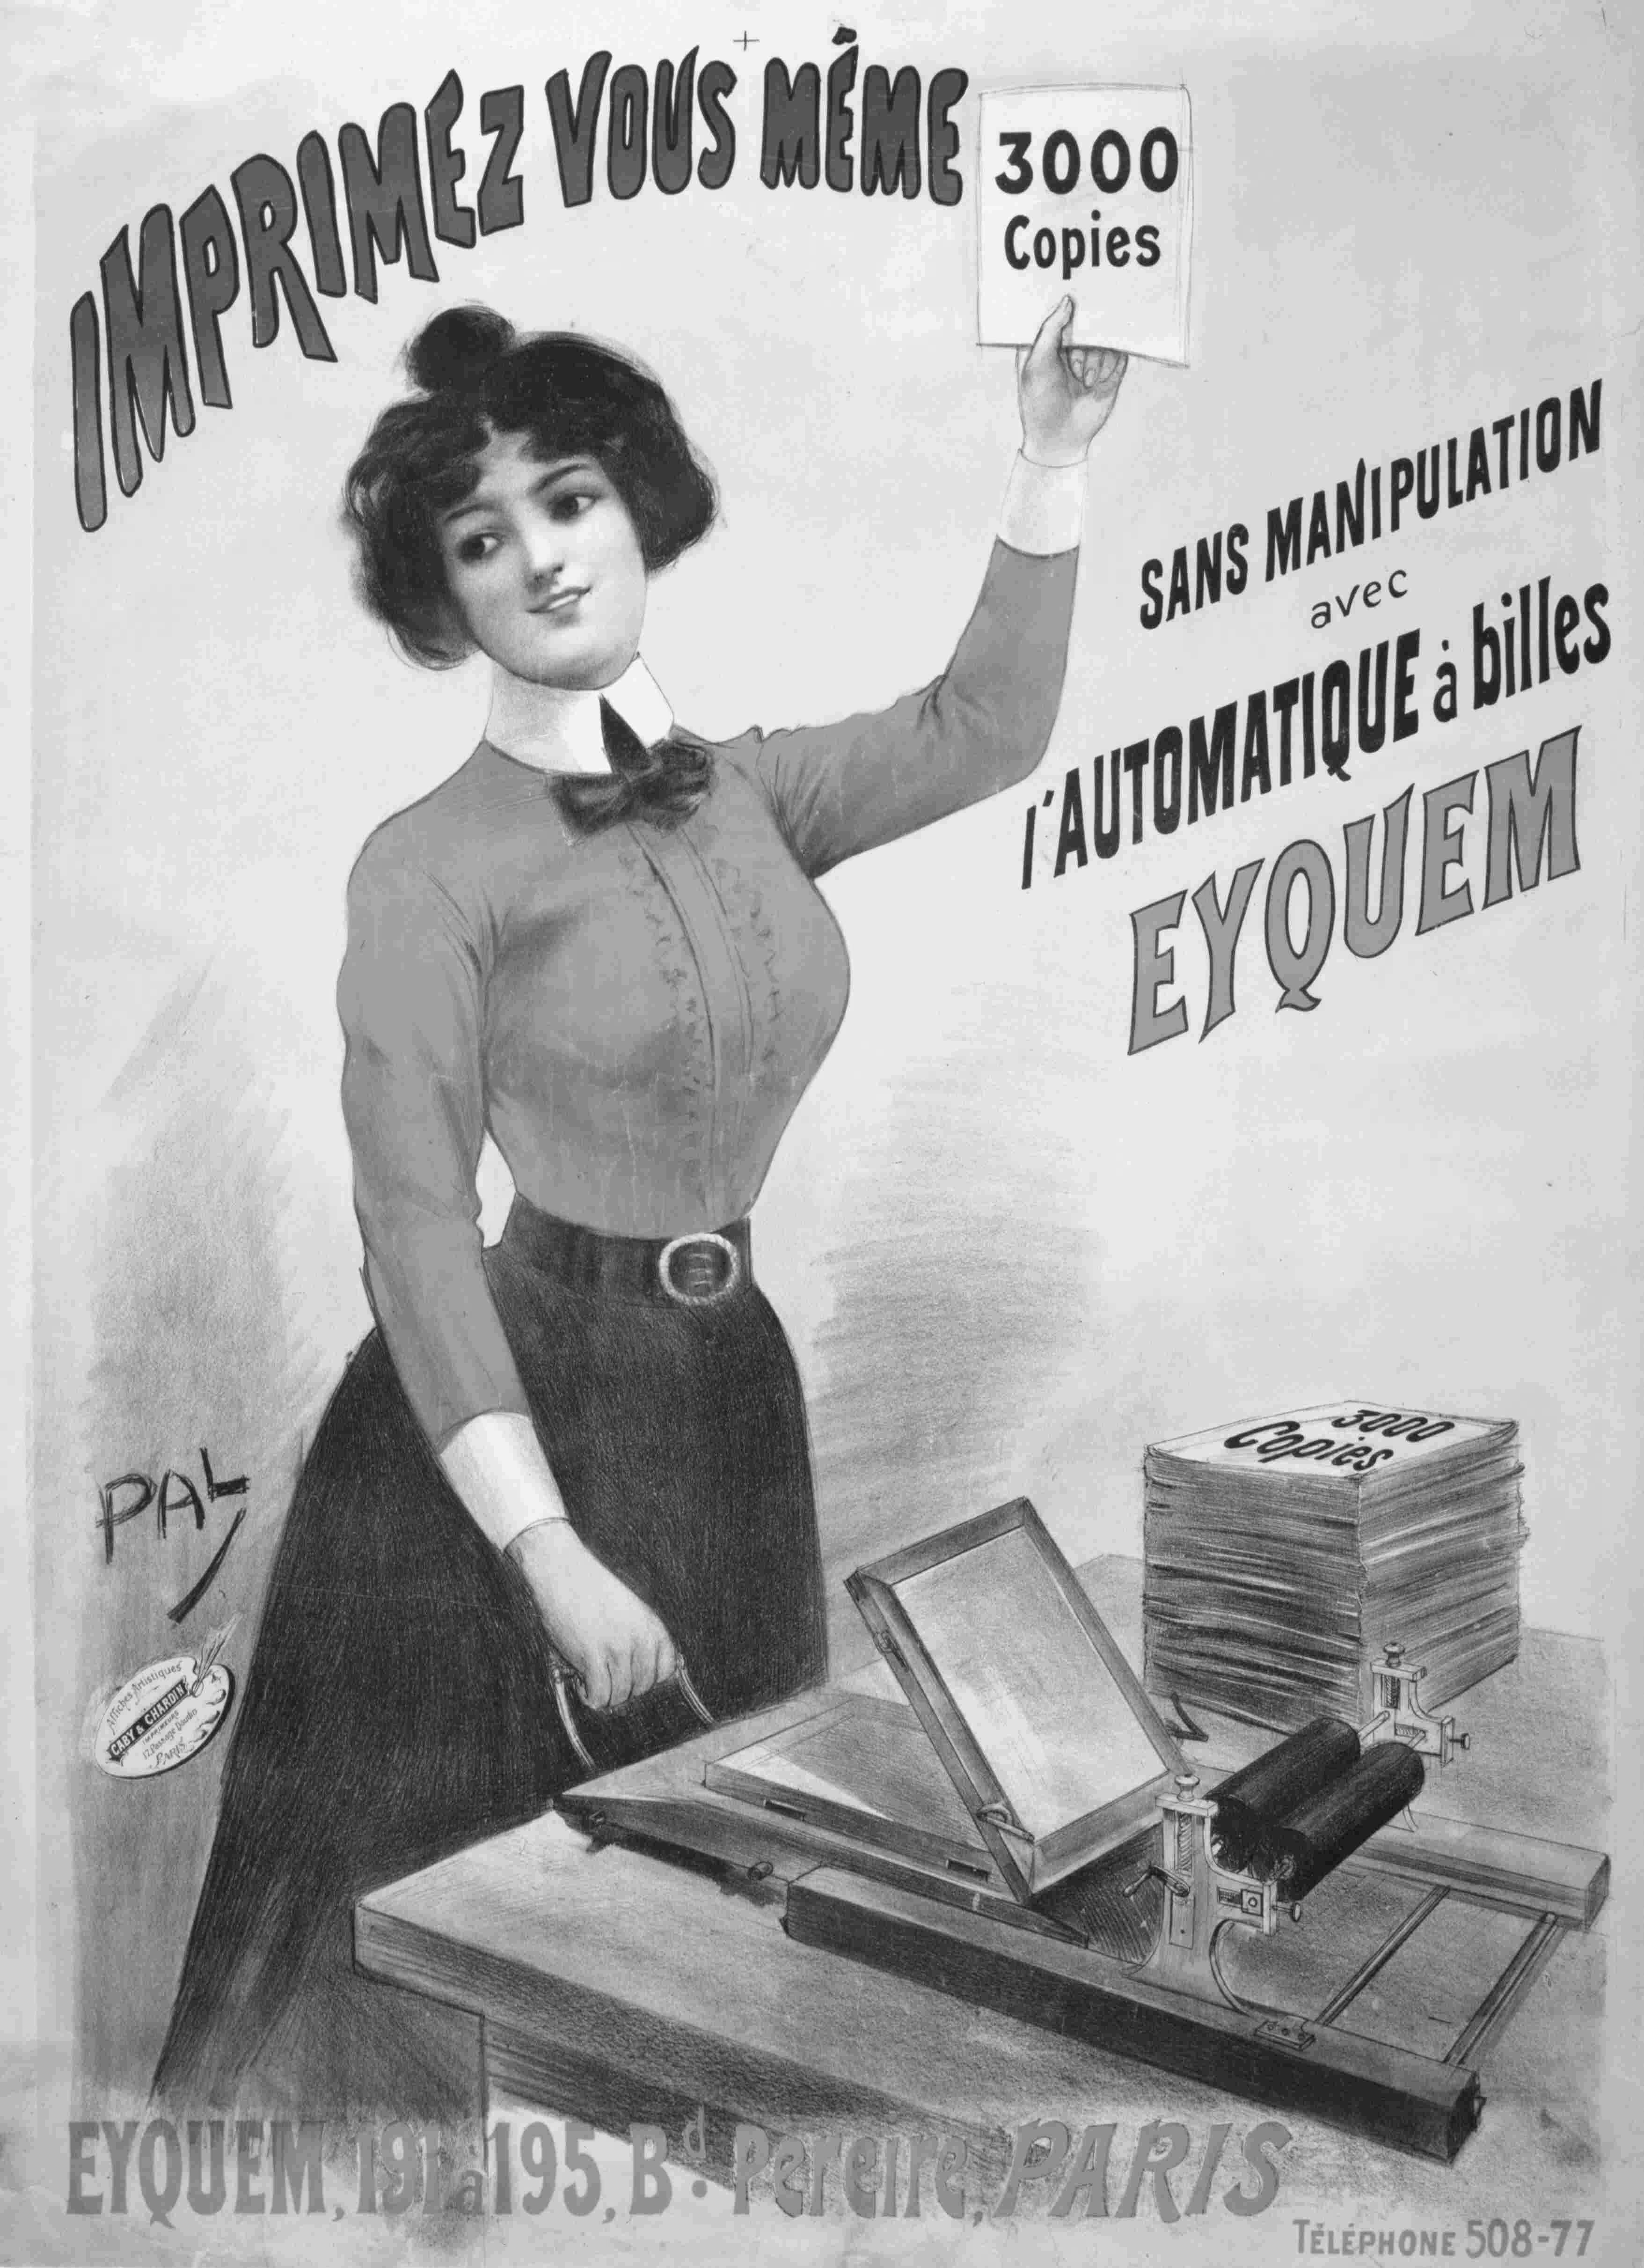 EYQUEM, Werbeschrift von 1899, gemalt 1855 von Jean-Louis Paléologue